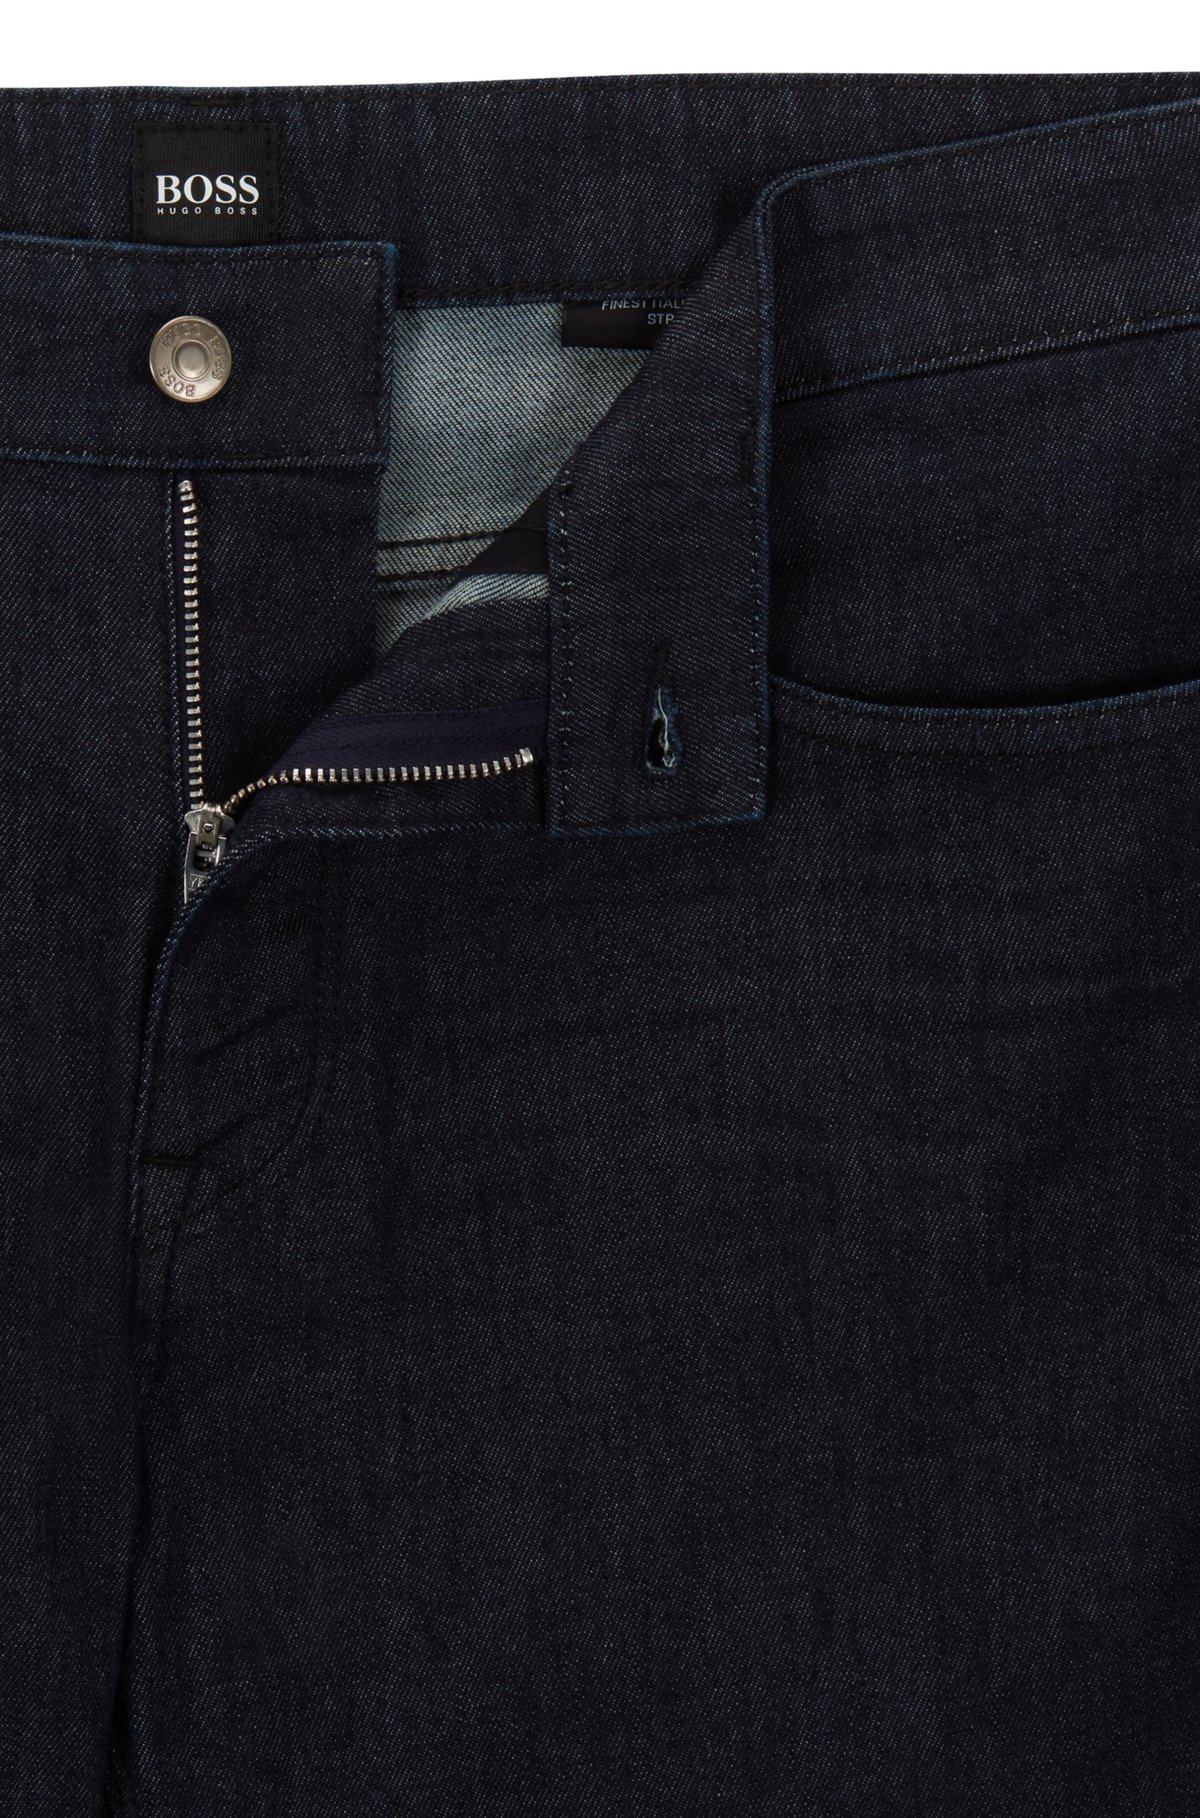 Human modul opskrift BOSS - Regular-fit jeans in blue lightweight denim